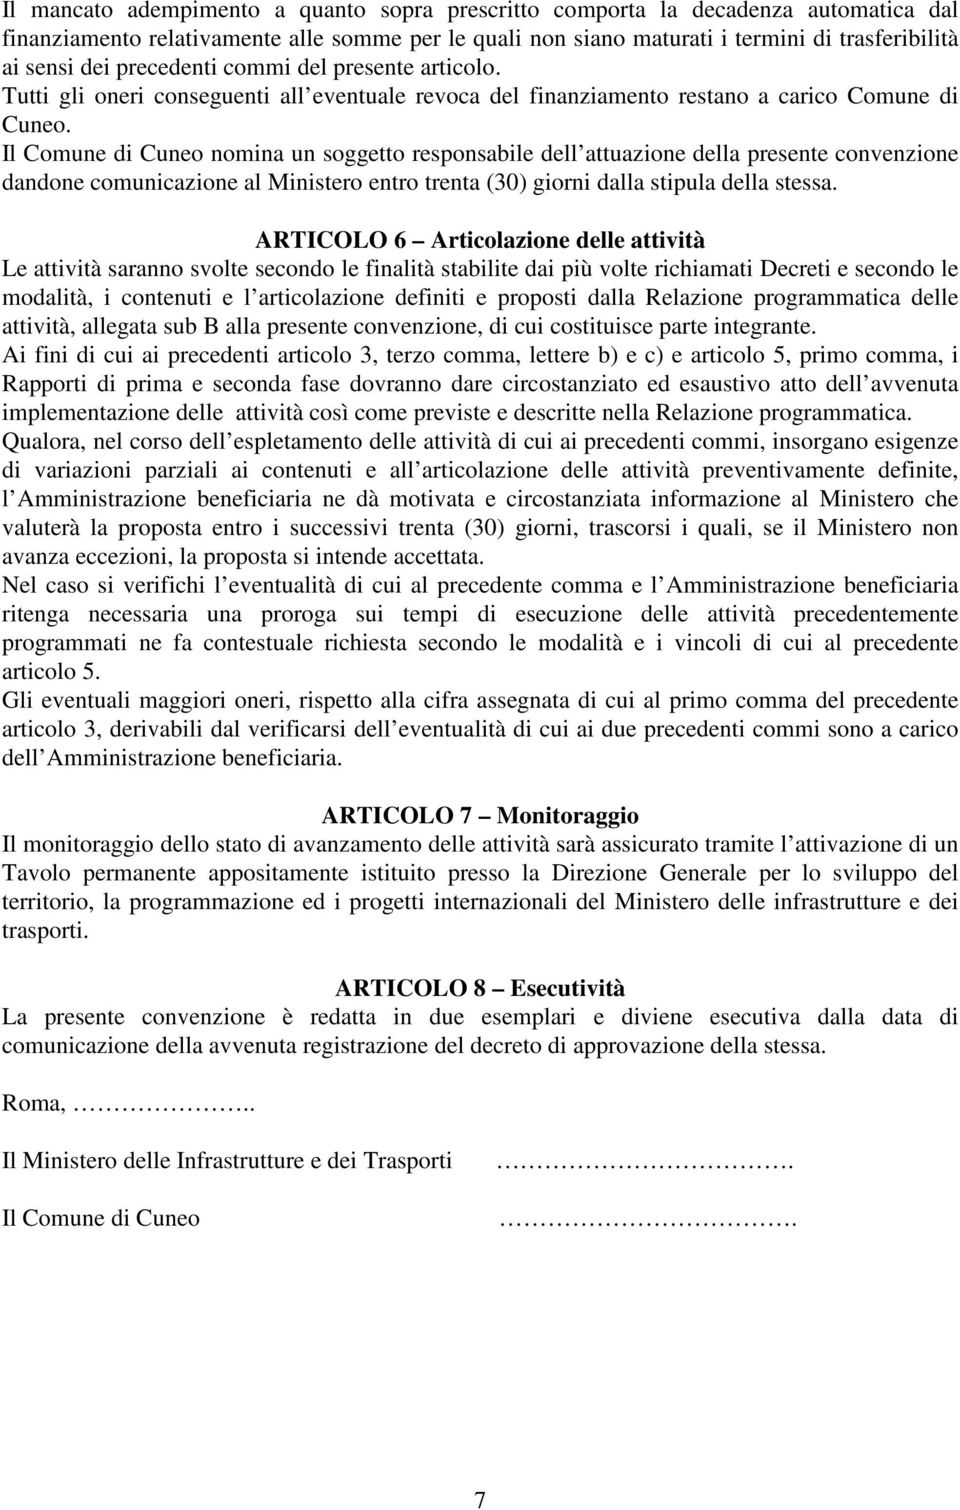 Il Comune di Cuneo nomina un soggetto responsabile dell attuazione della presente convenzione dandone comunicazione al Ministero entro trenta (30) giorni dalla stipula della stessa.